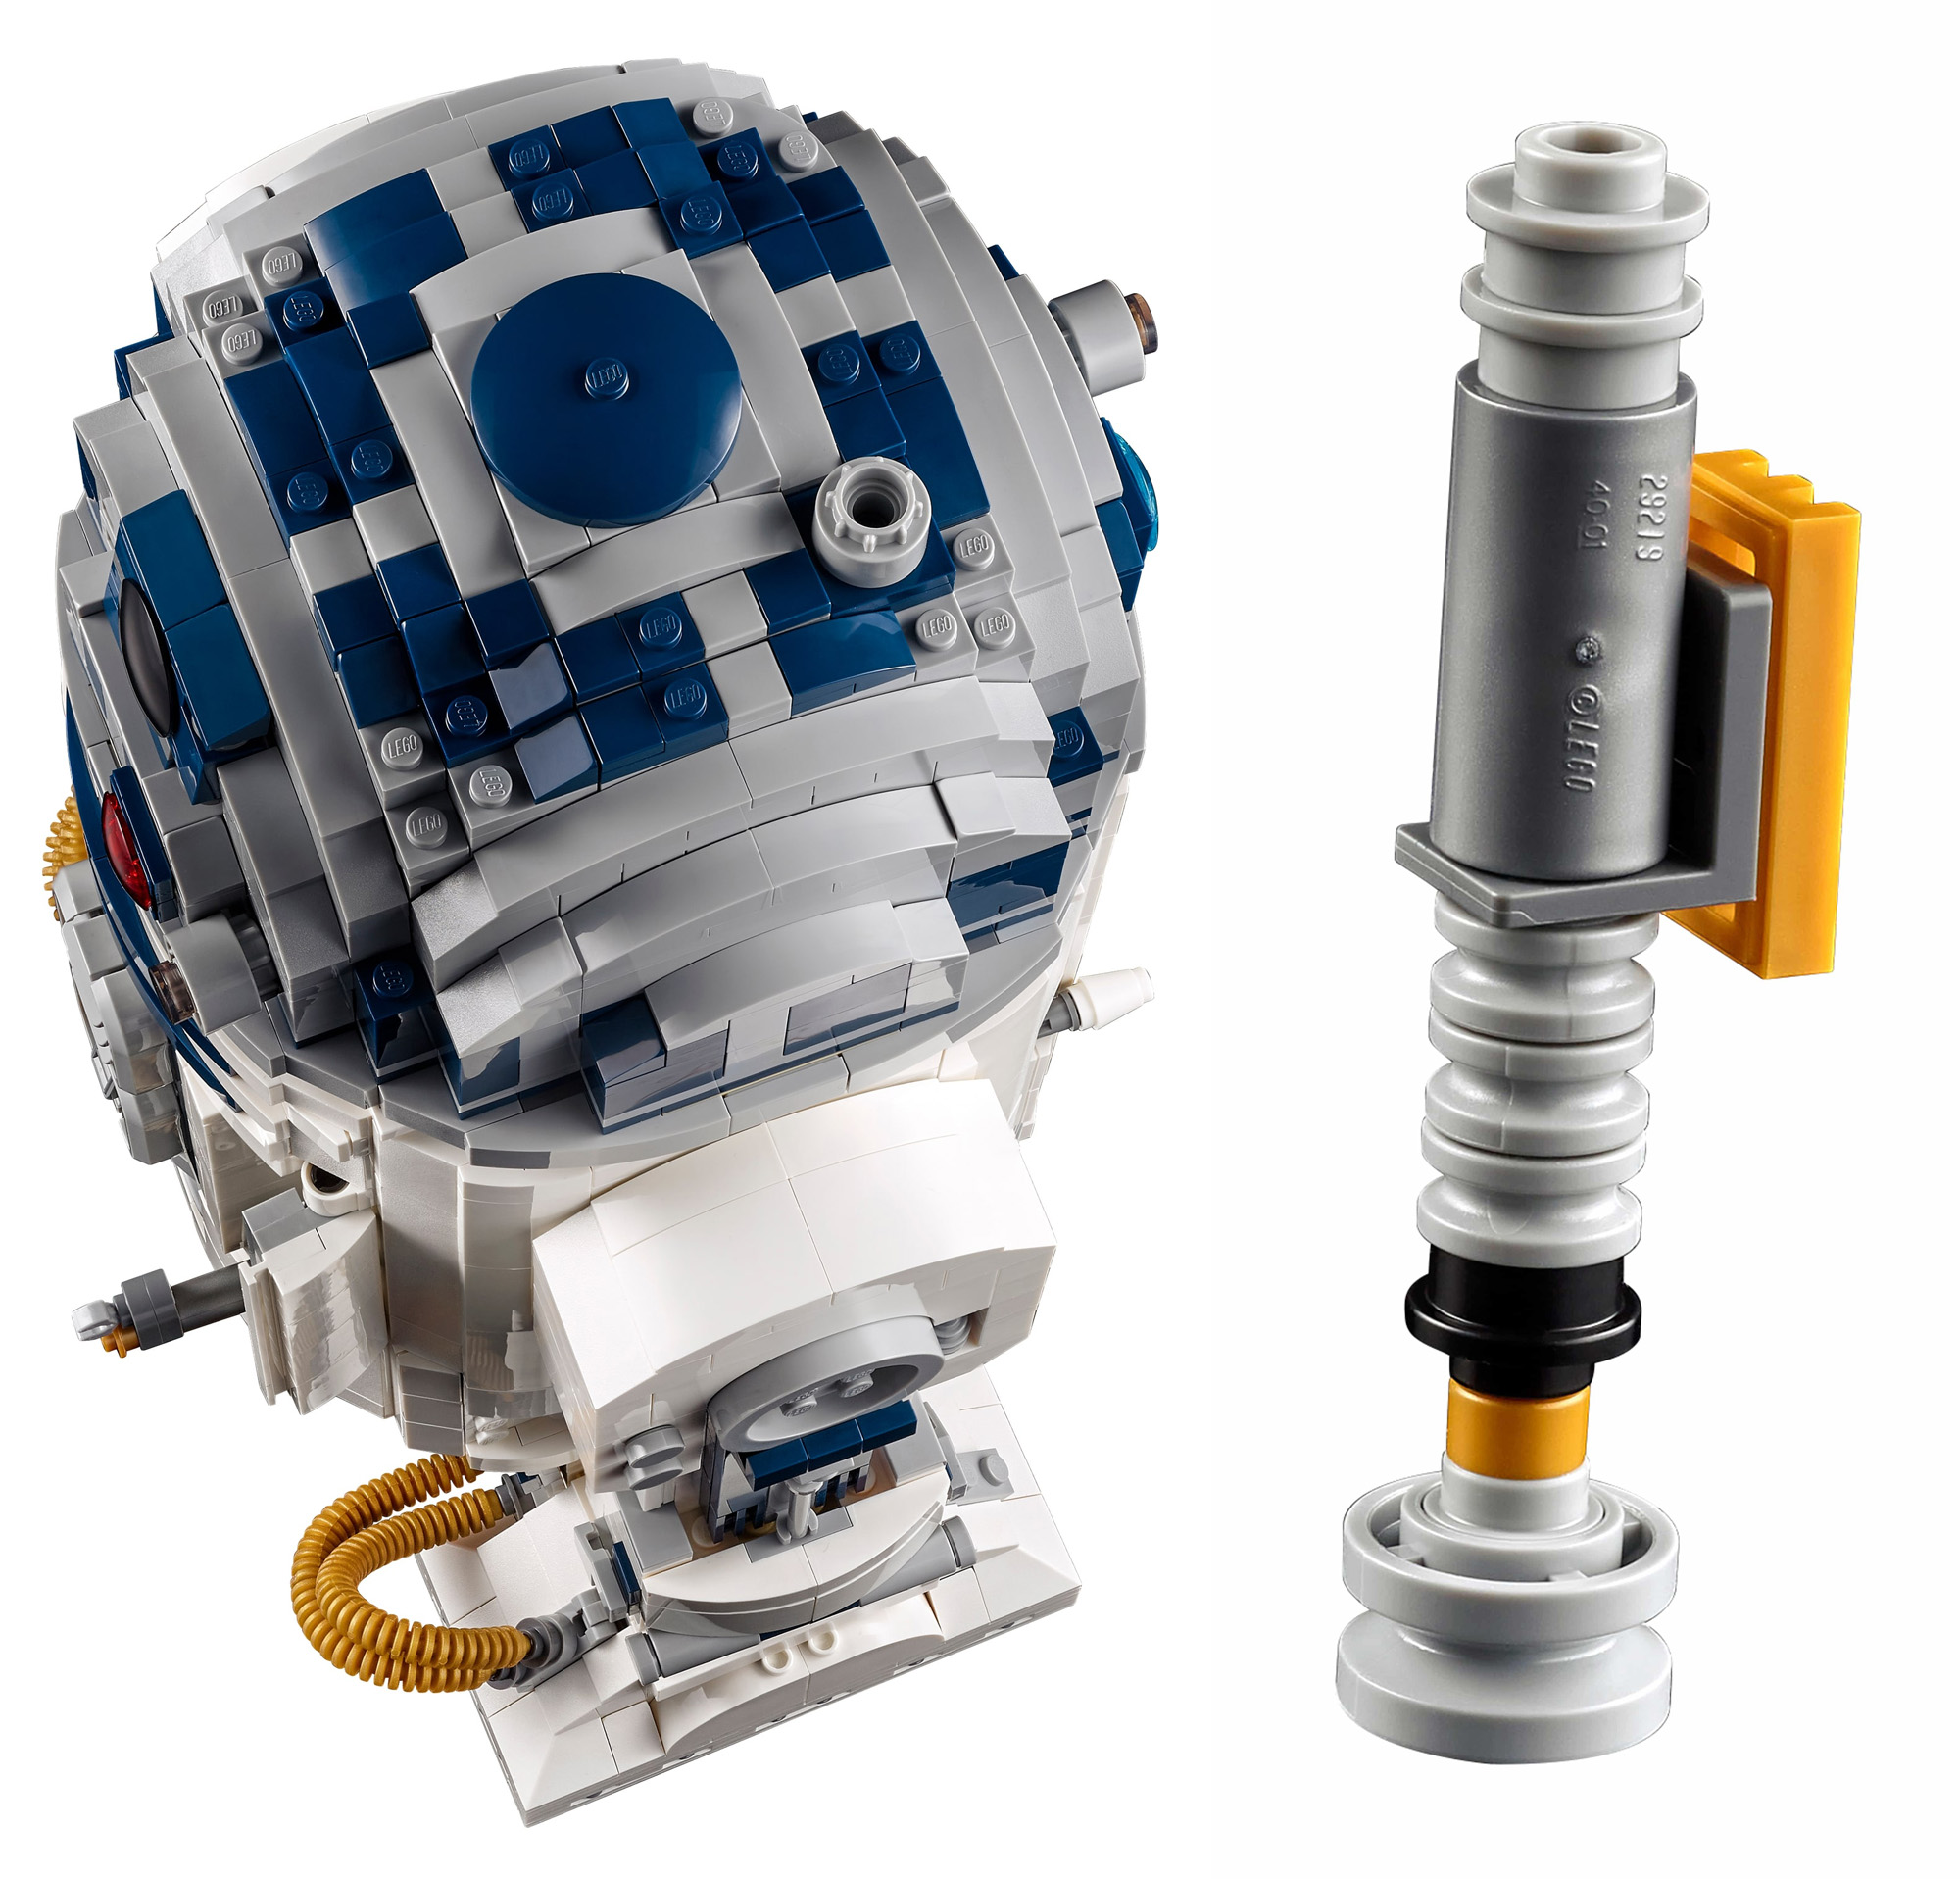 5月1日発売『75308 R2-D2』UCS大人のレゴ(R)スター・ウォーズ新製品